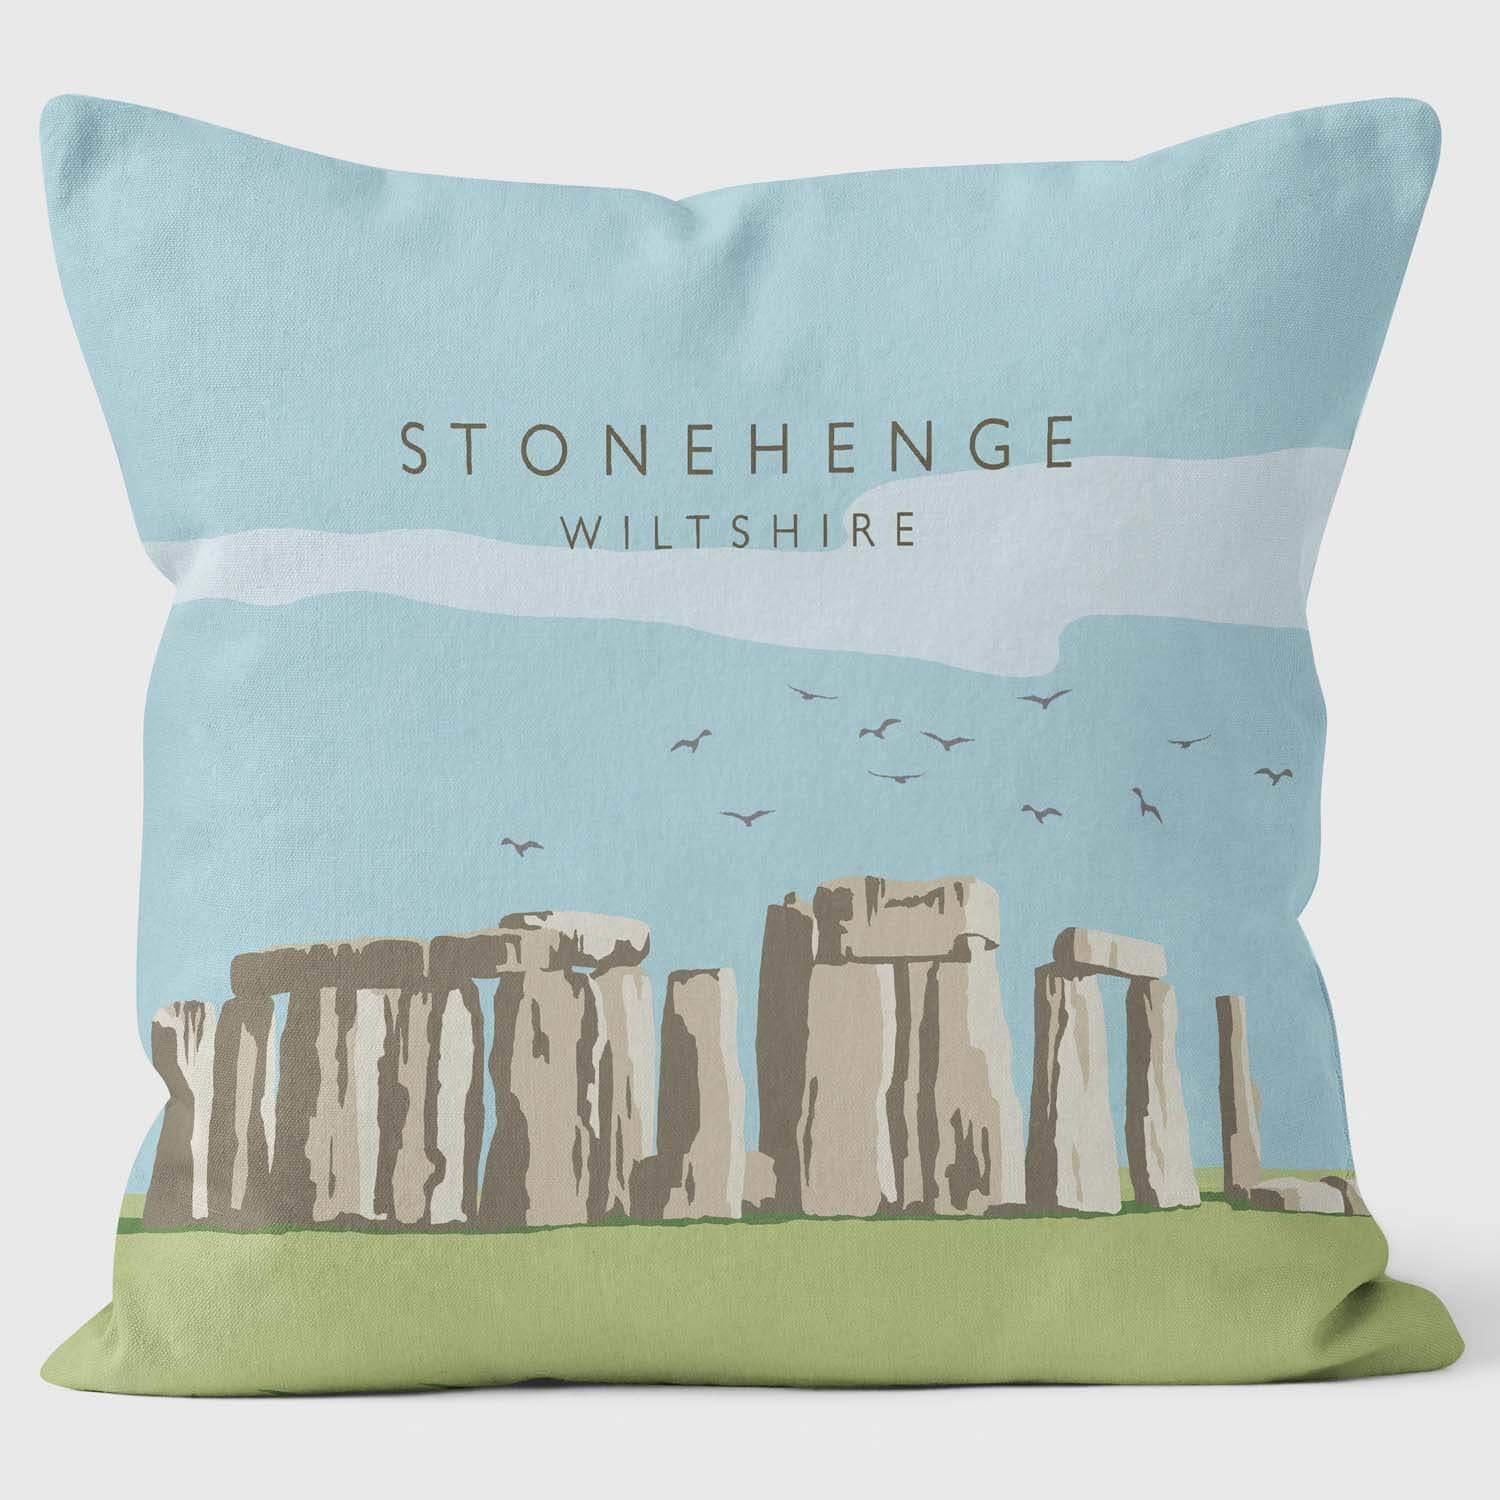 Stonhenge - Martin Wiscombe Cushion - Handmade Cushions UK - WeLoveCushions